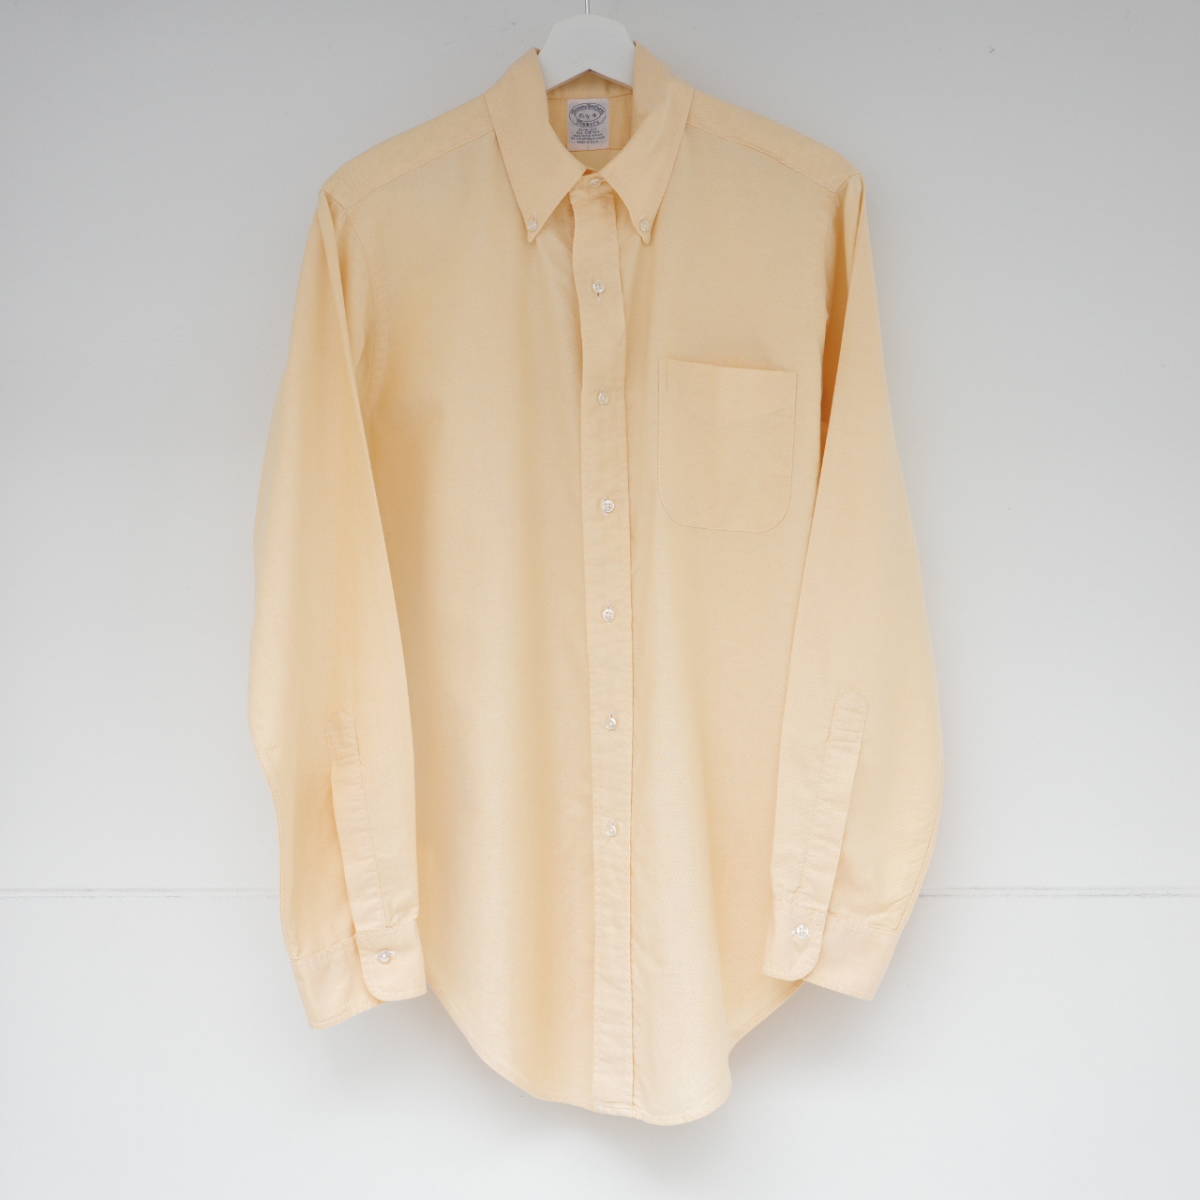 ブルックスブラザーズ メーカーズ シャツ 15.5-4 MADE IN USA Brooks Brothers makers B.D. oxford shirt Yellow SLIM FIT